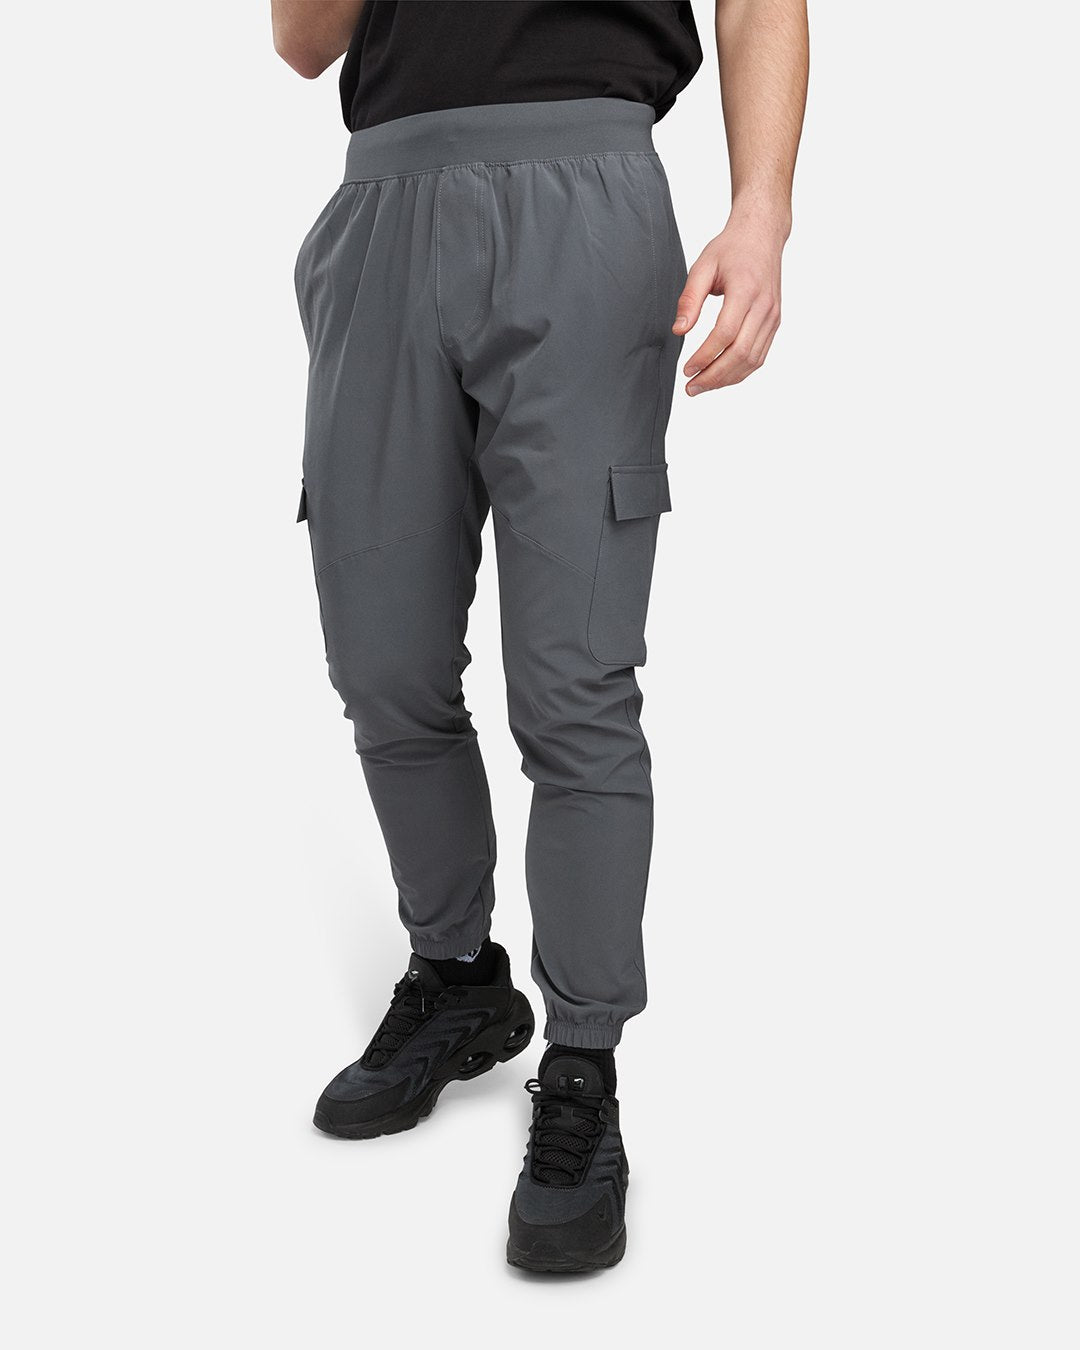 Pantalon Under Armour Stretch Woven - Gris/Noir